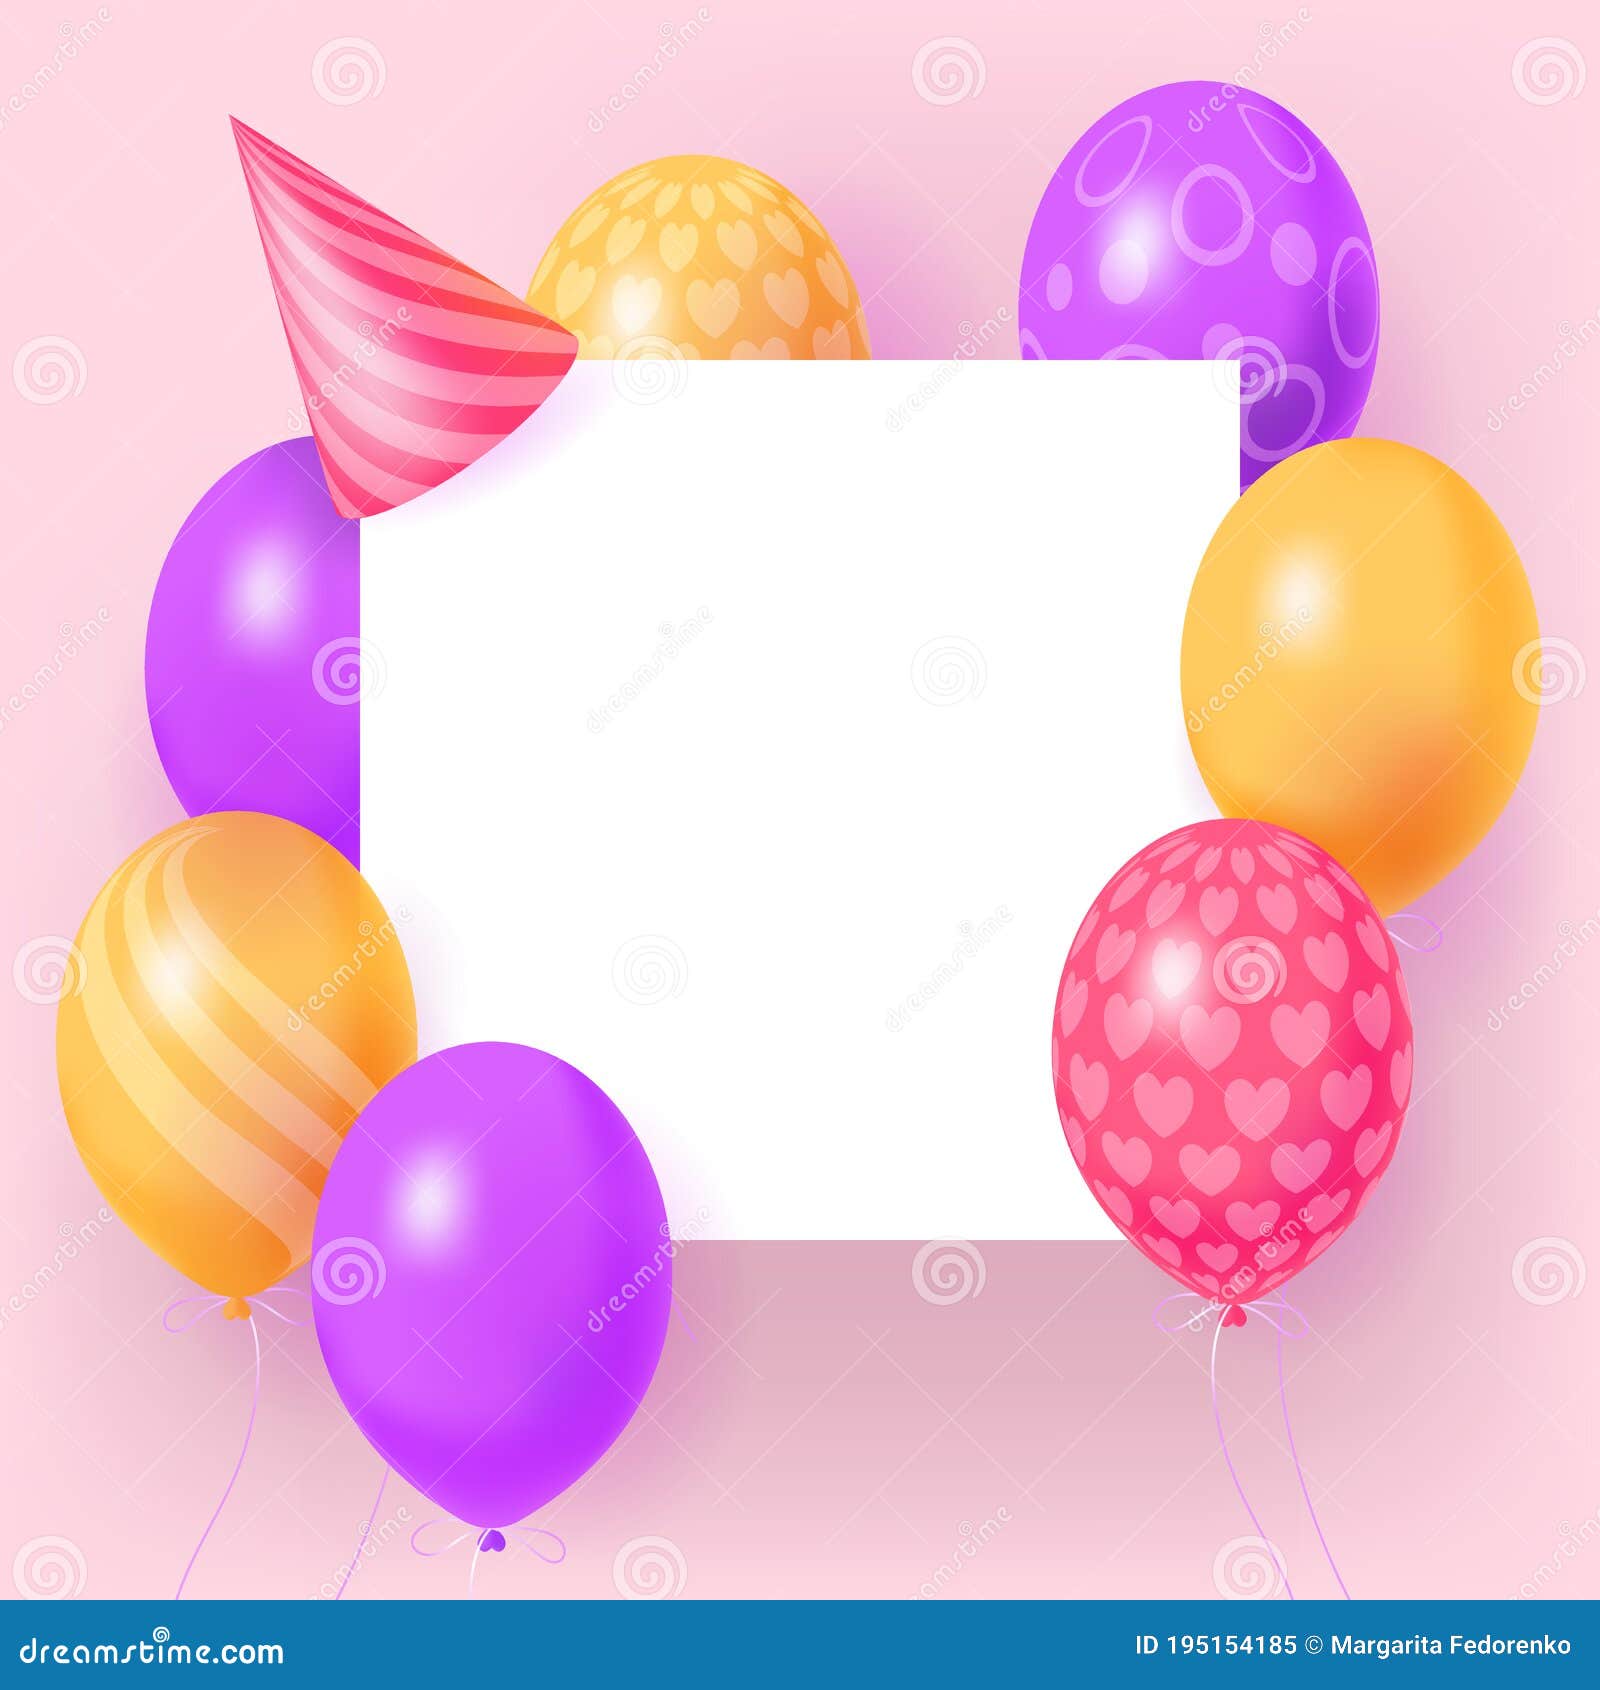 Diseño de tarjeta de felicitación de aniversario de 2 años con globo  realista